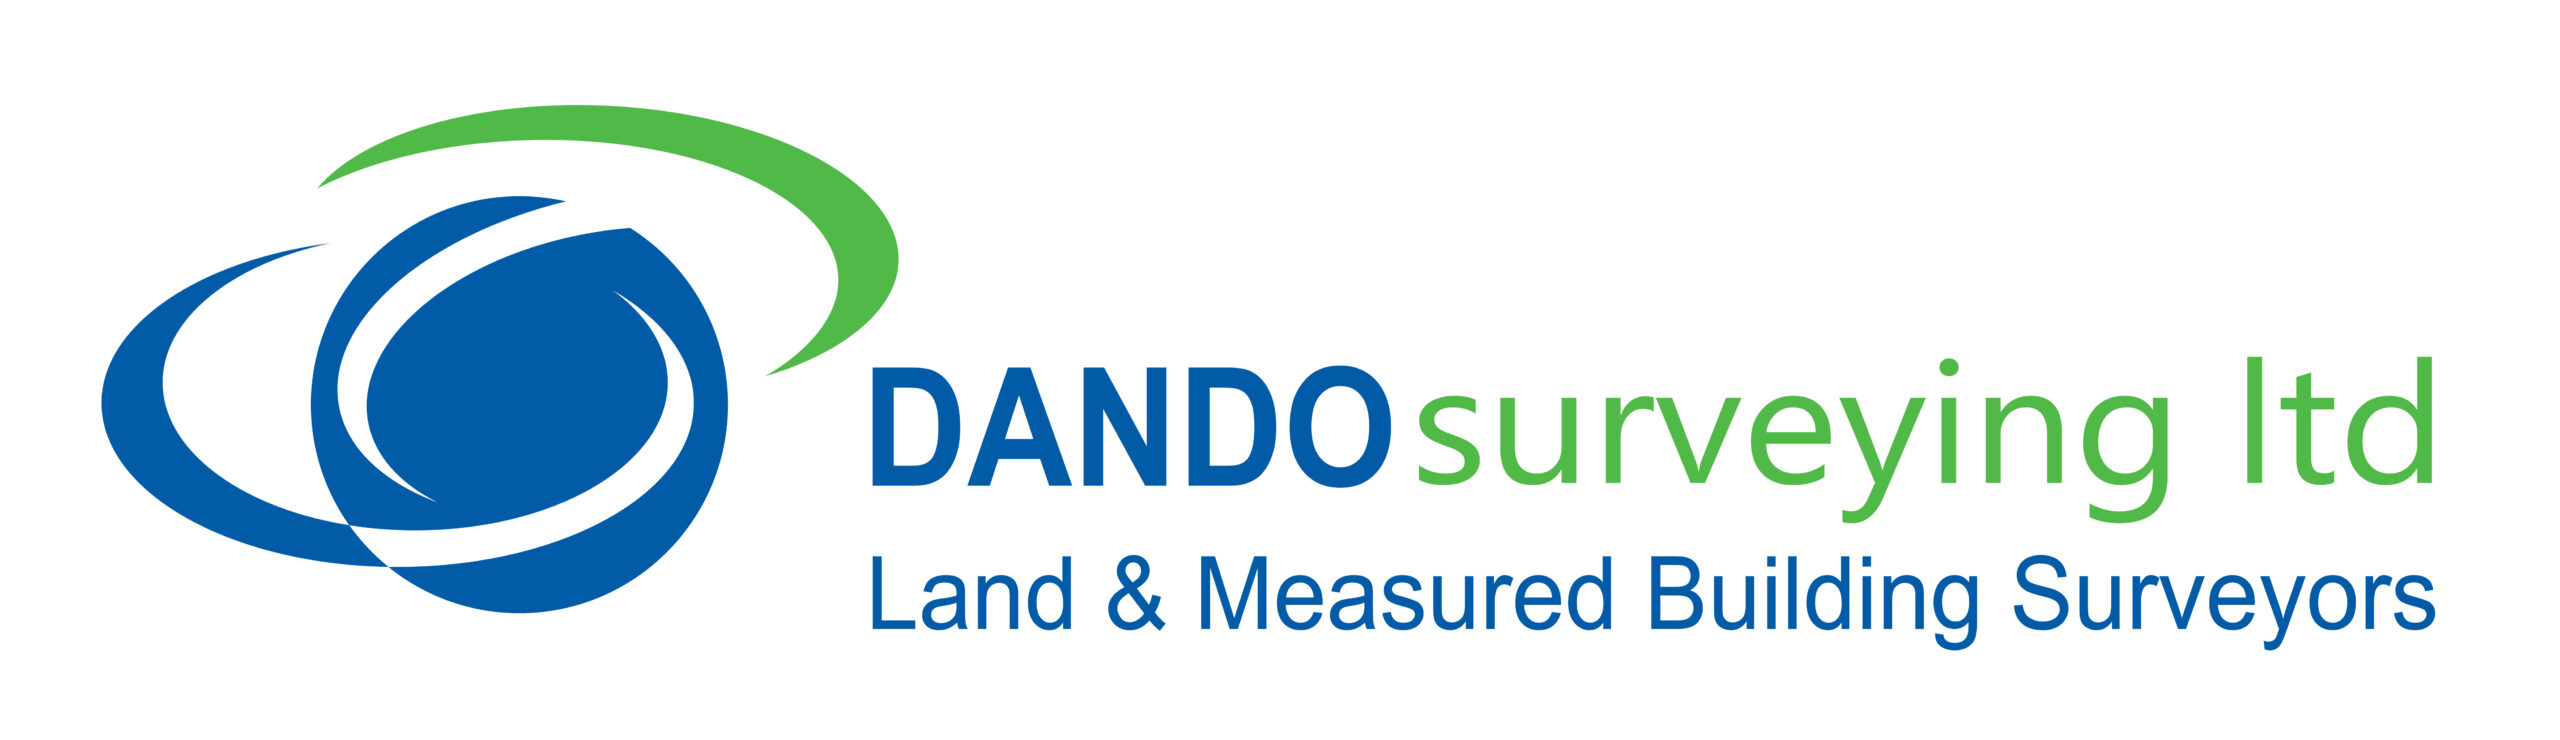 Dando Surveying Ltd